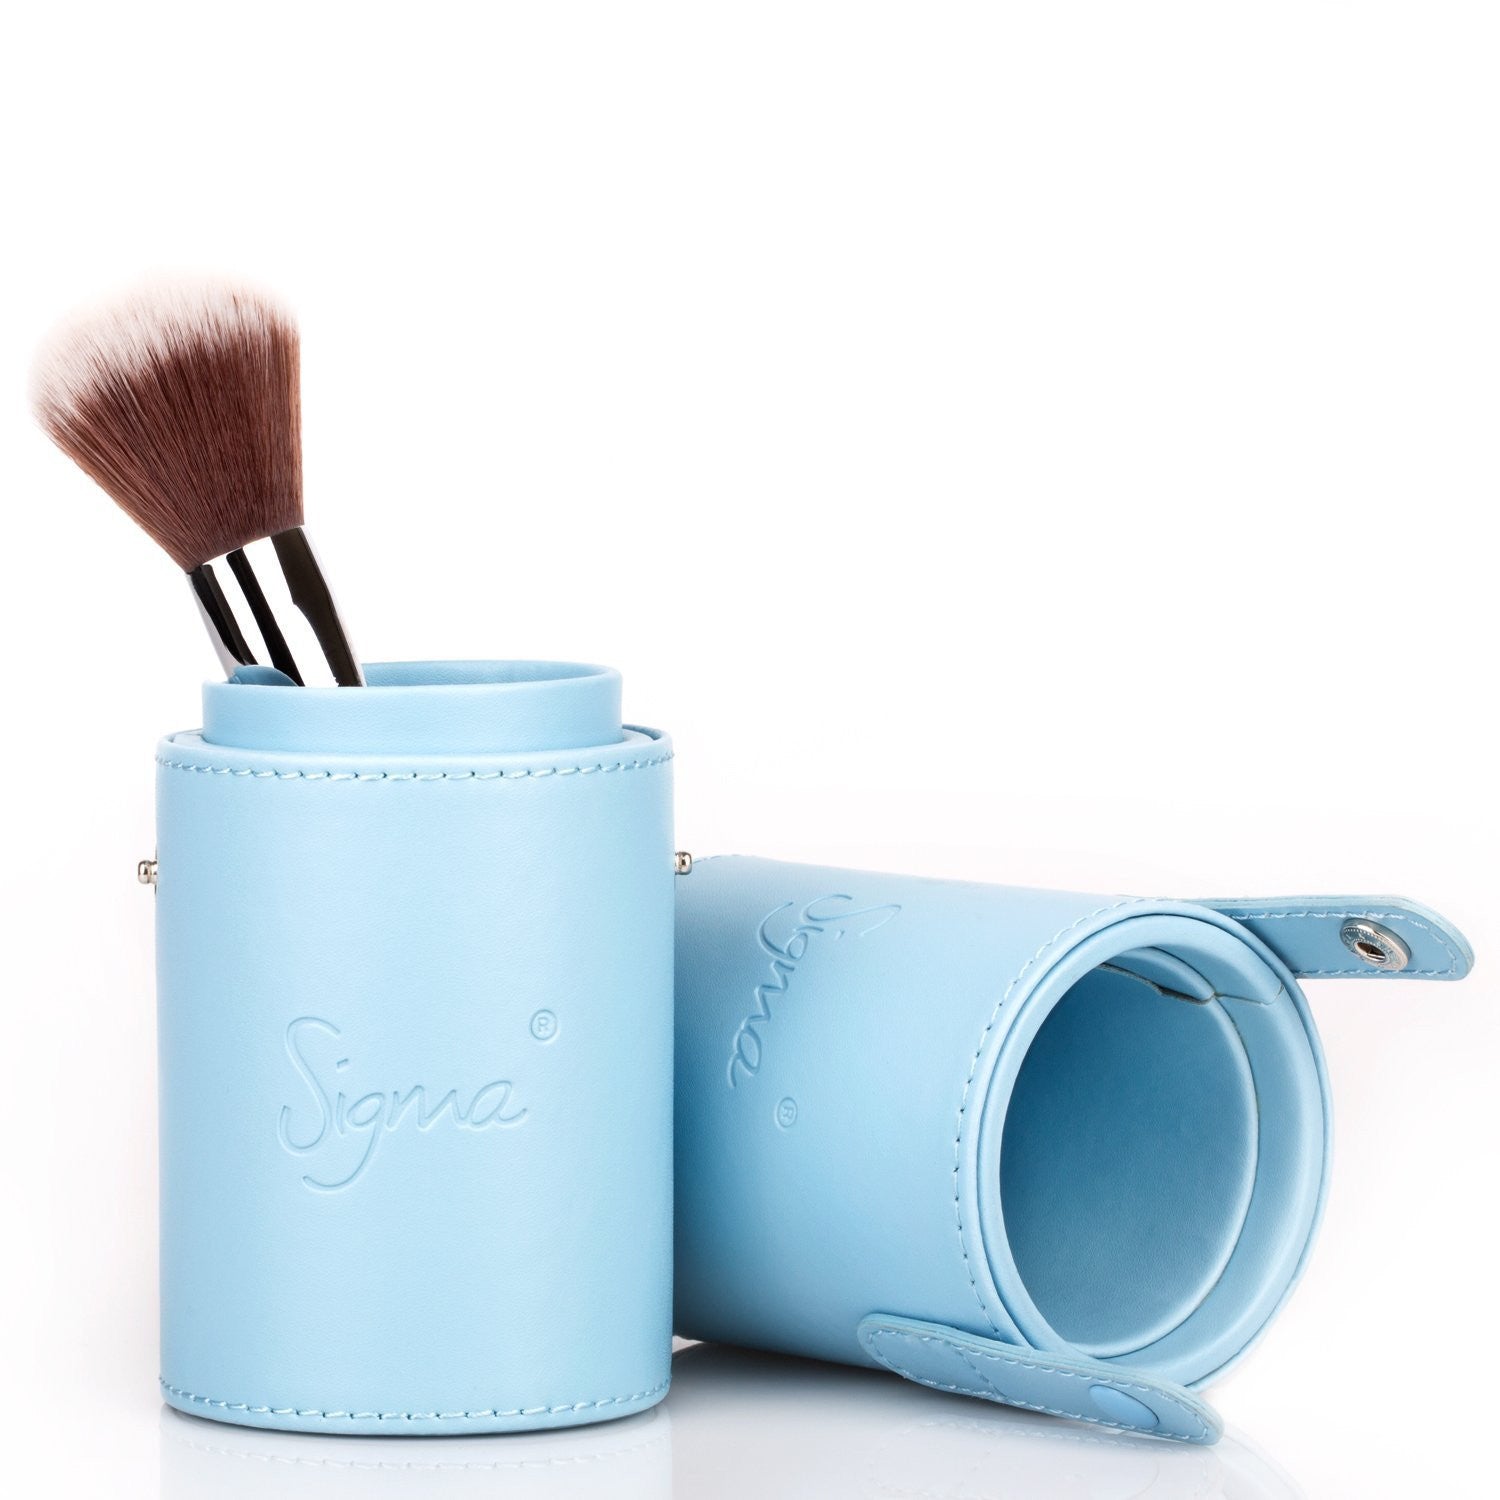 Sigma Mrs Bunny Blue Travel Kit 7 Brushes